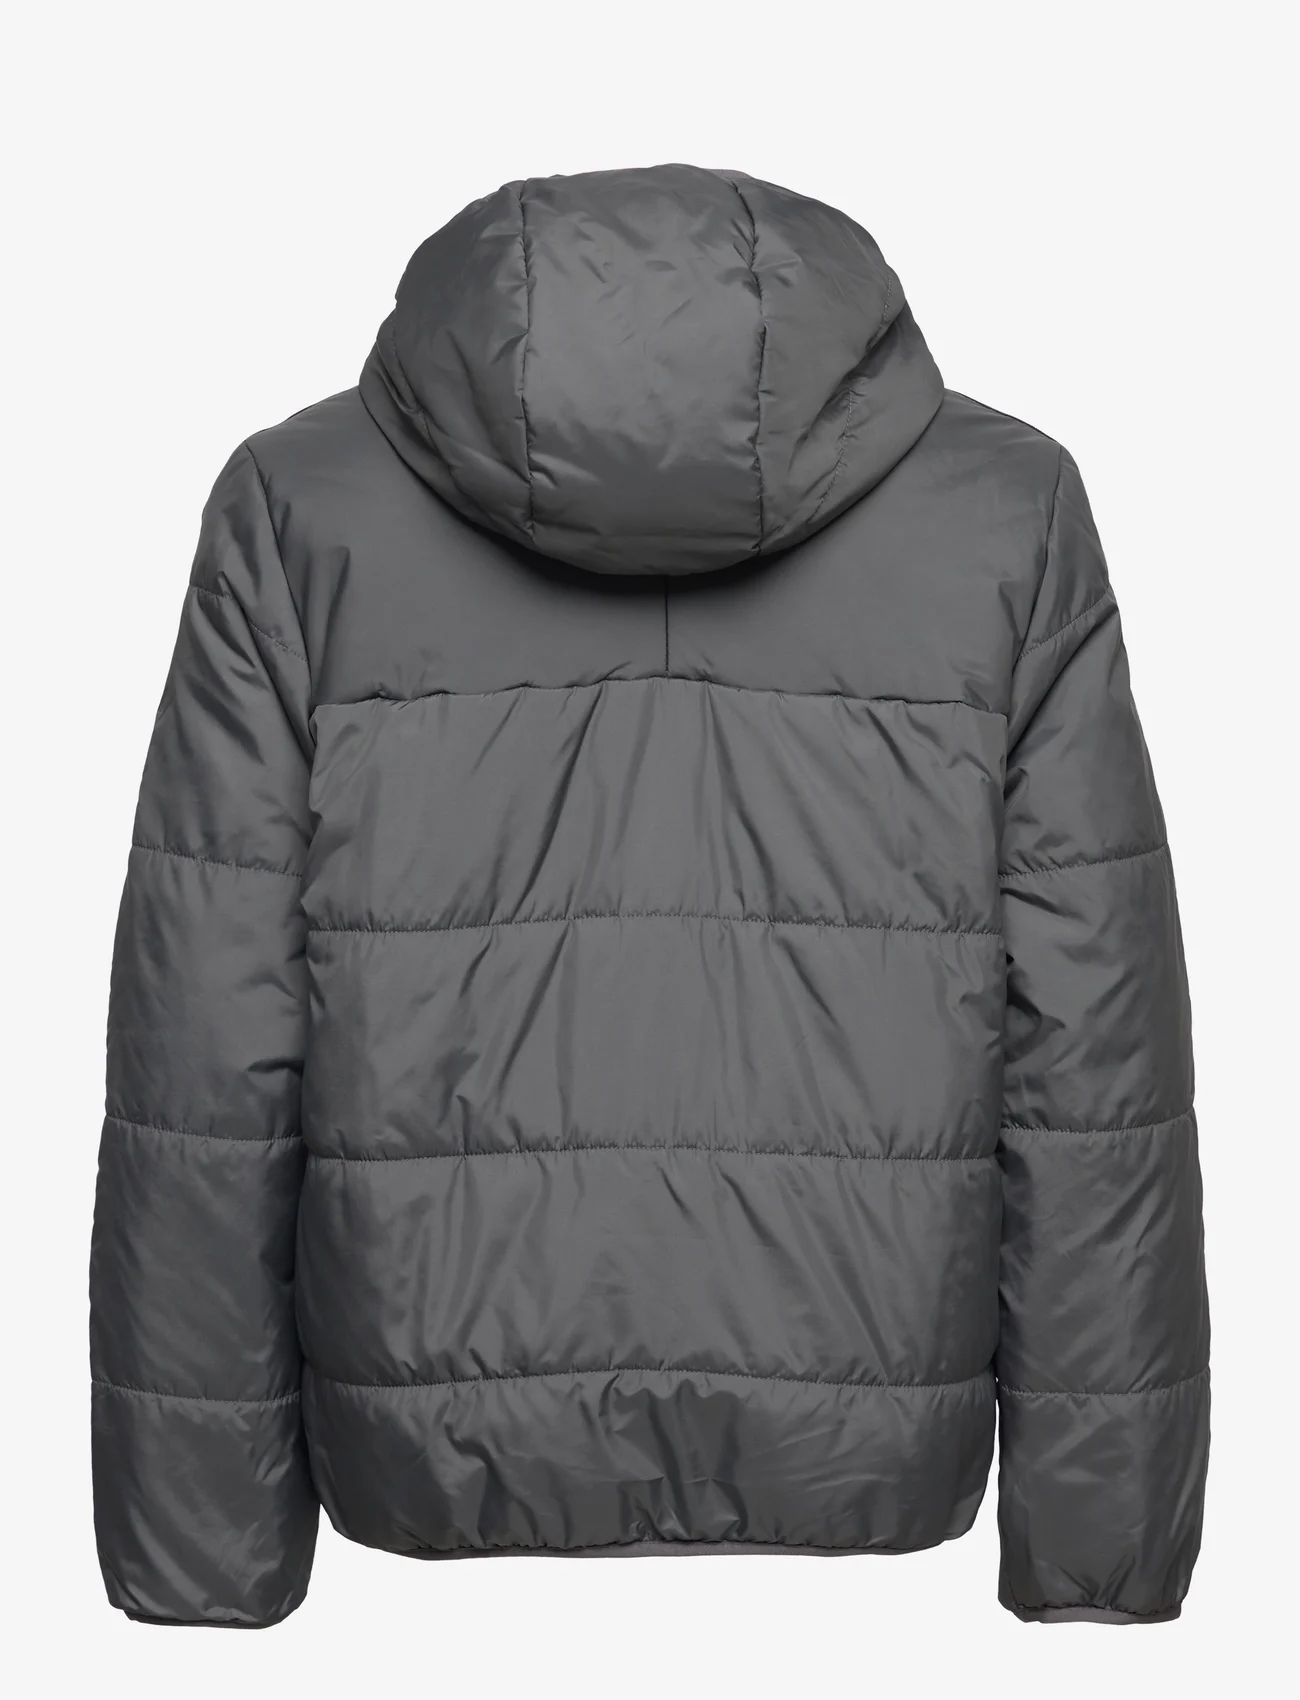 adidas Originals - Adicolor Jacket - insulated jackets - grefiv - 1